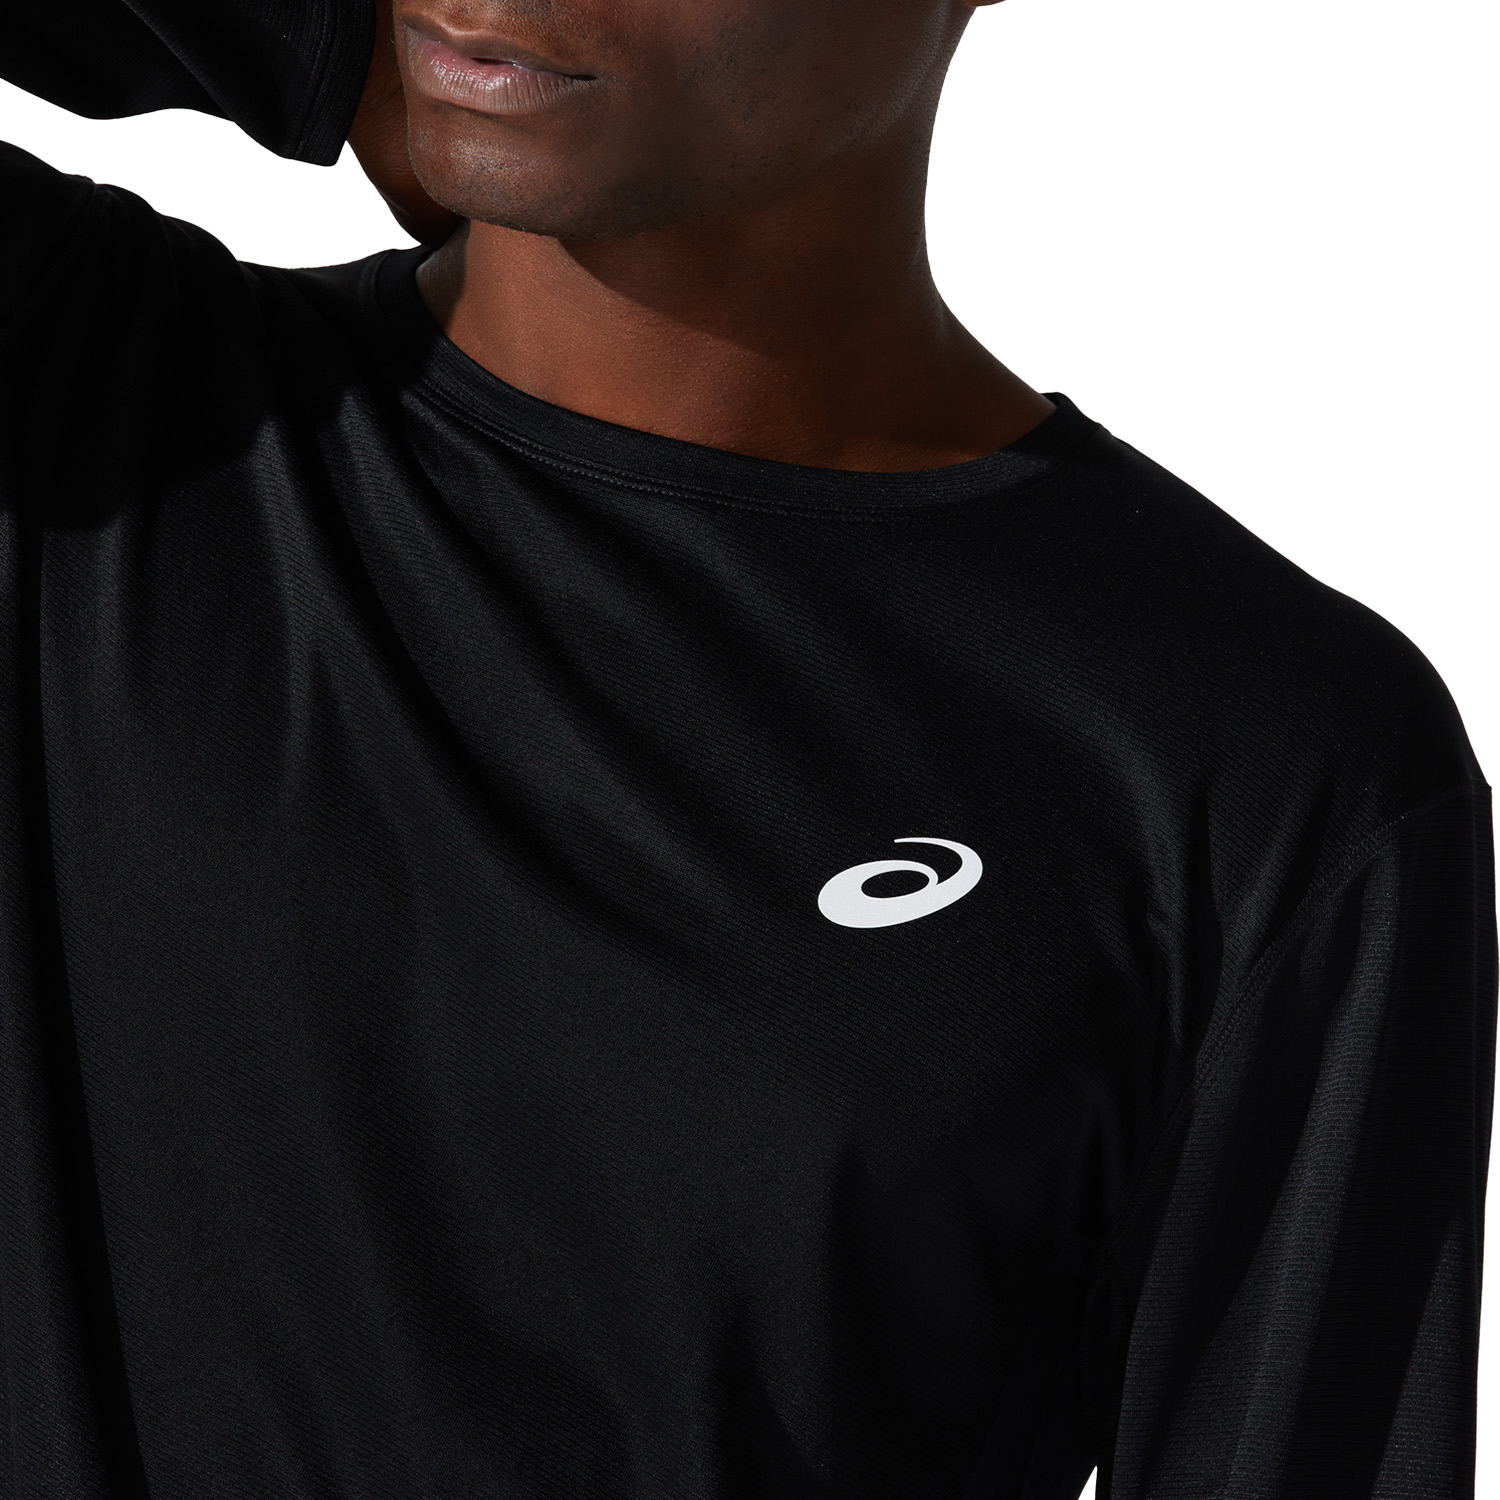 Asics Core Shirt - Performance Black